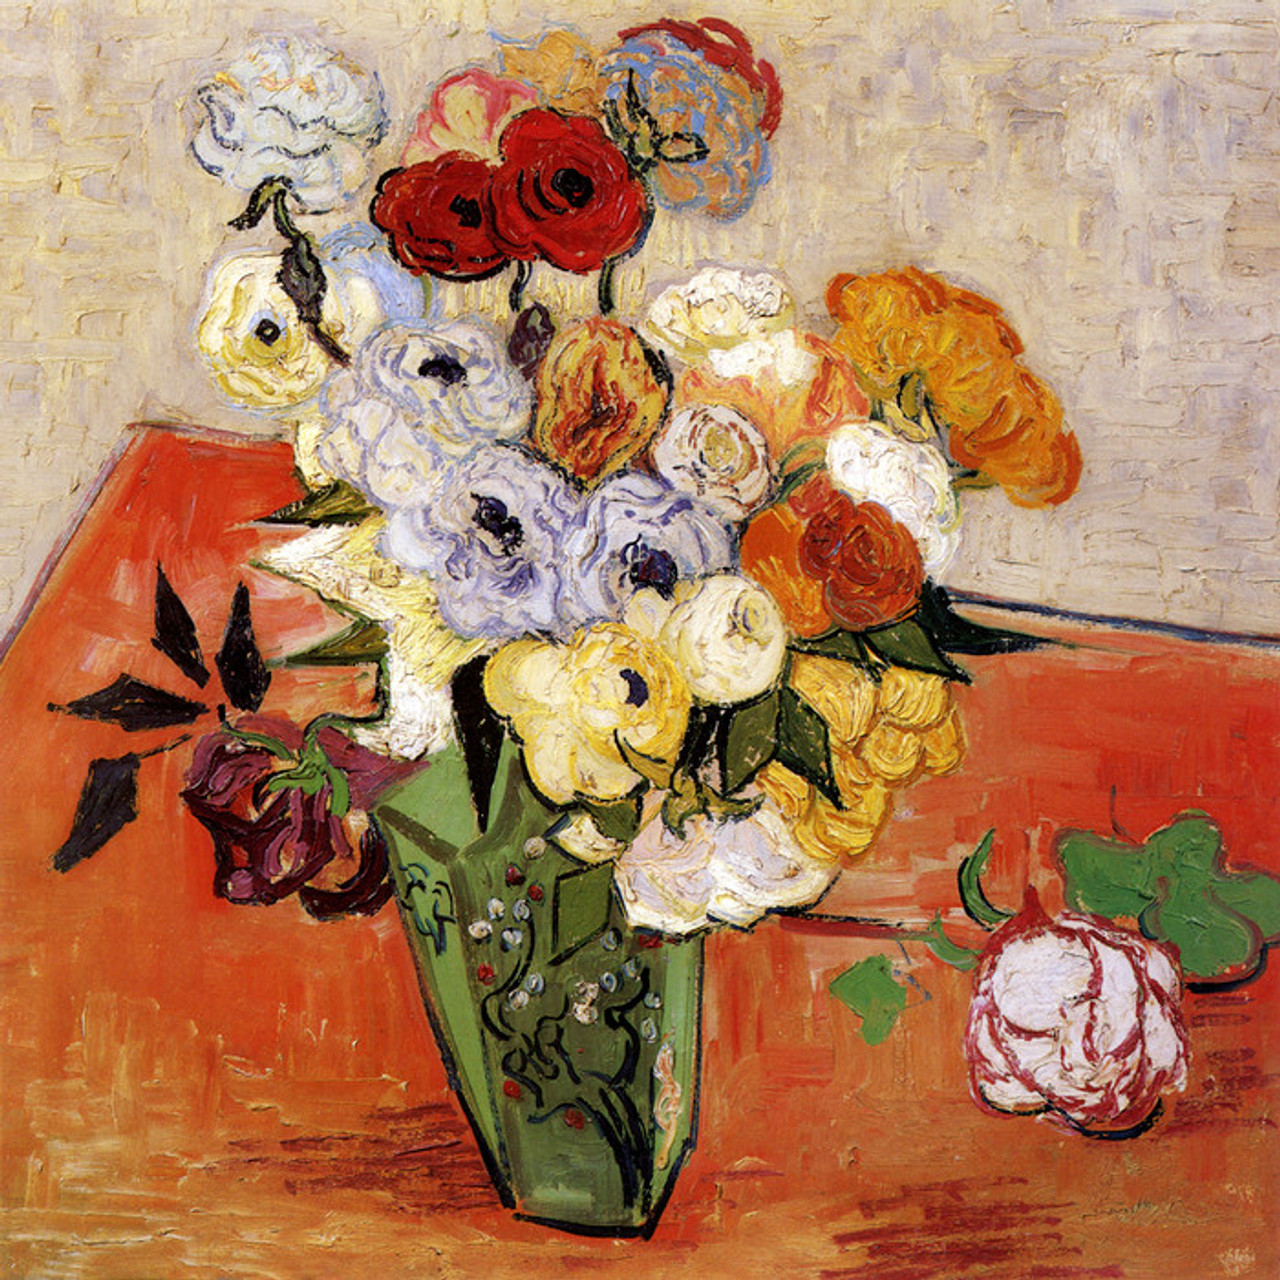 Art Prints of Japanese Vase with Roses & Anemonies by Van Gogh